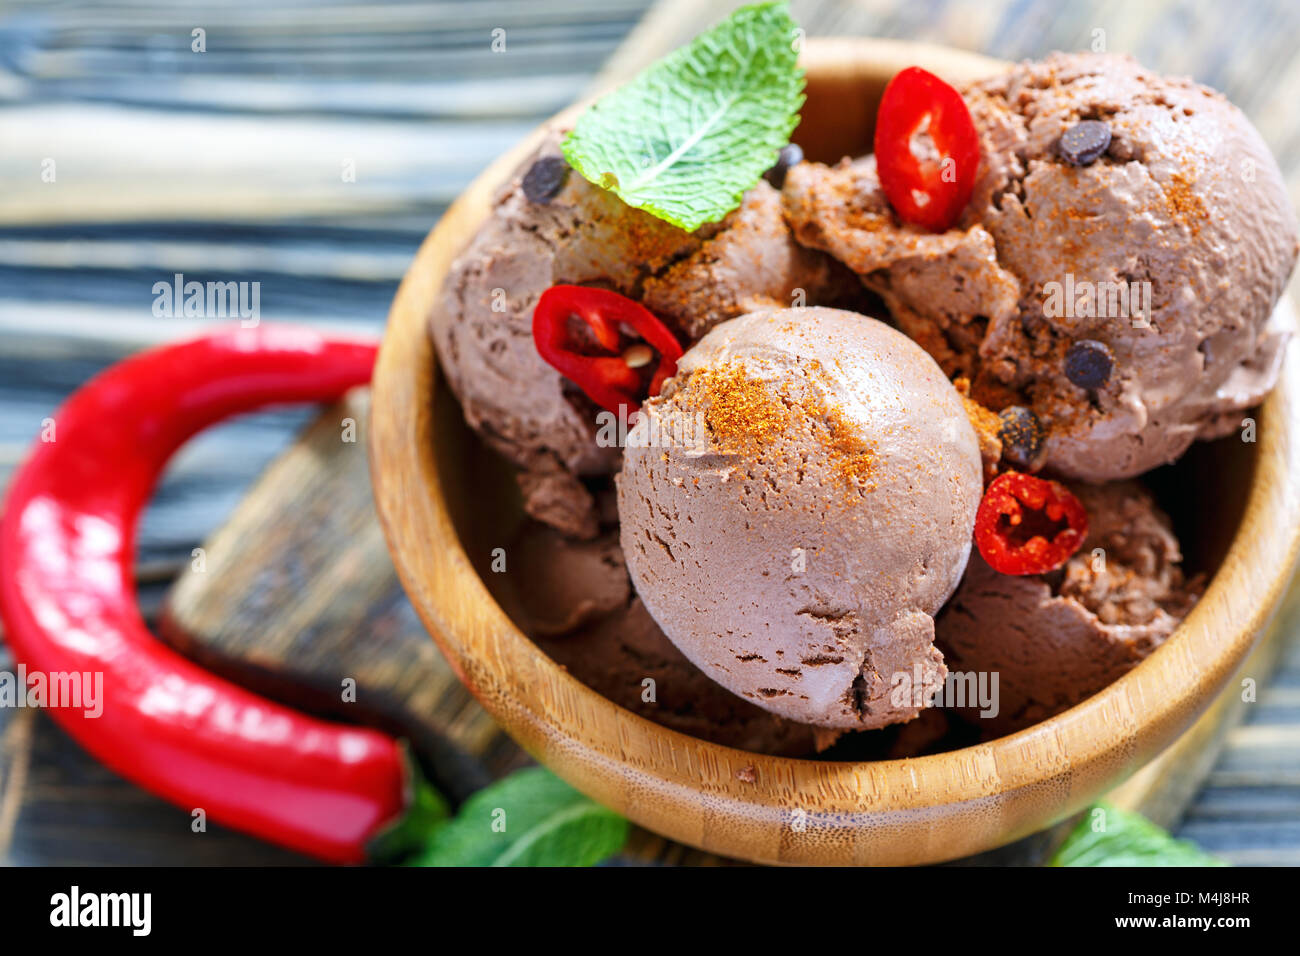 Homemade chocolate ice cream with chilli. Stock Photo